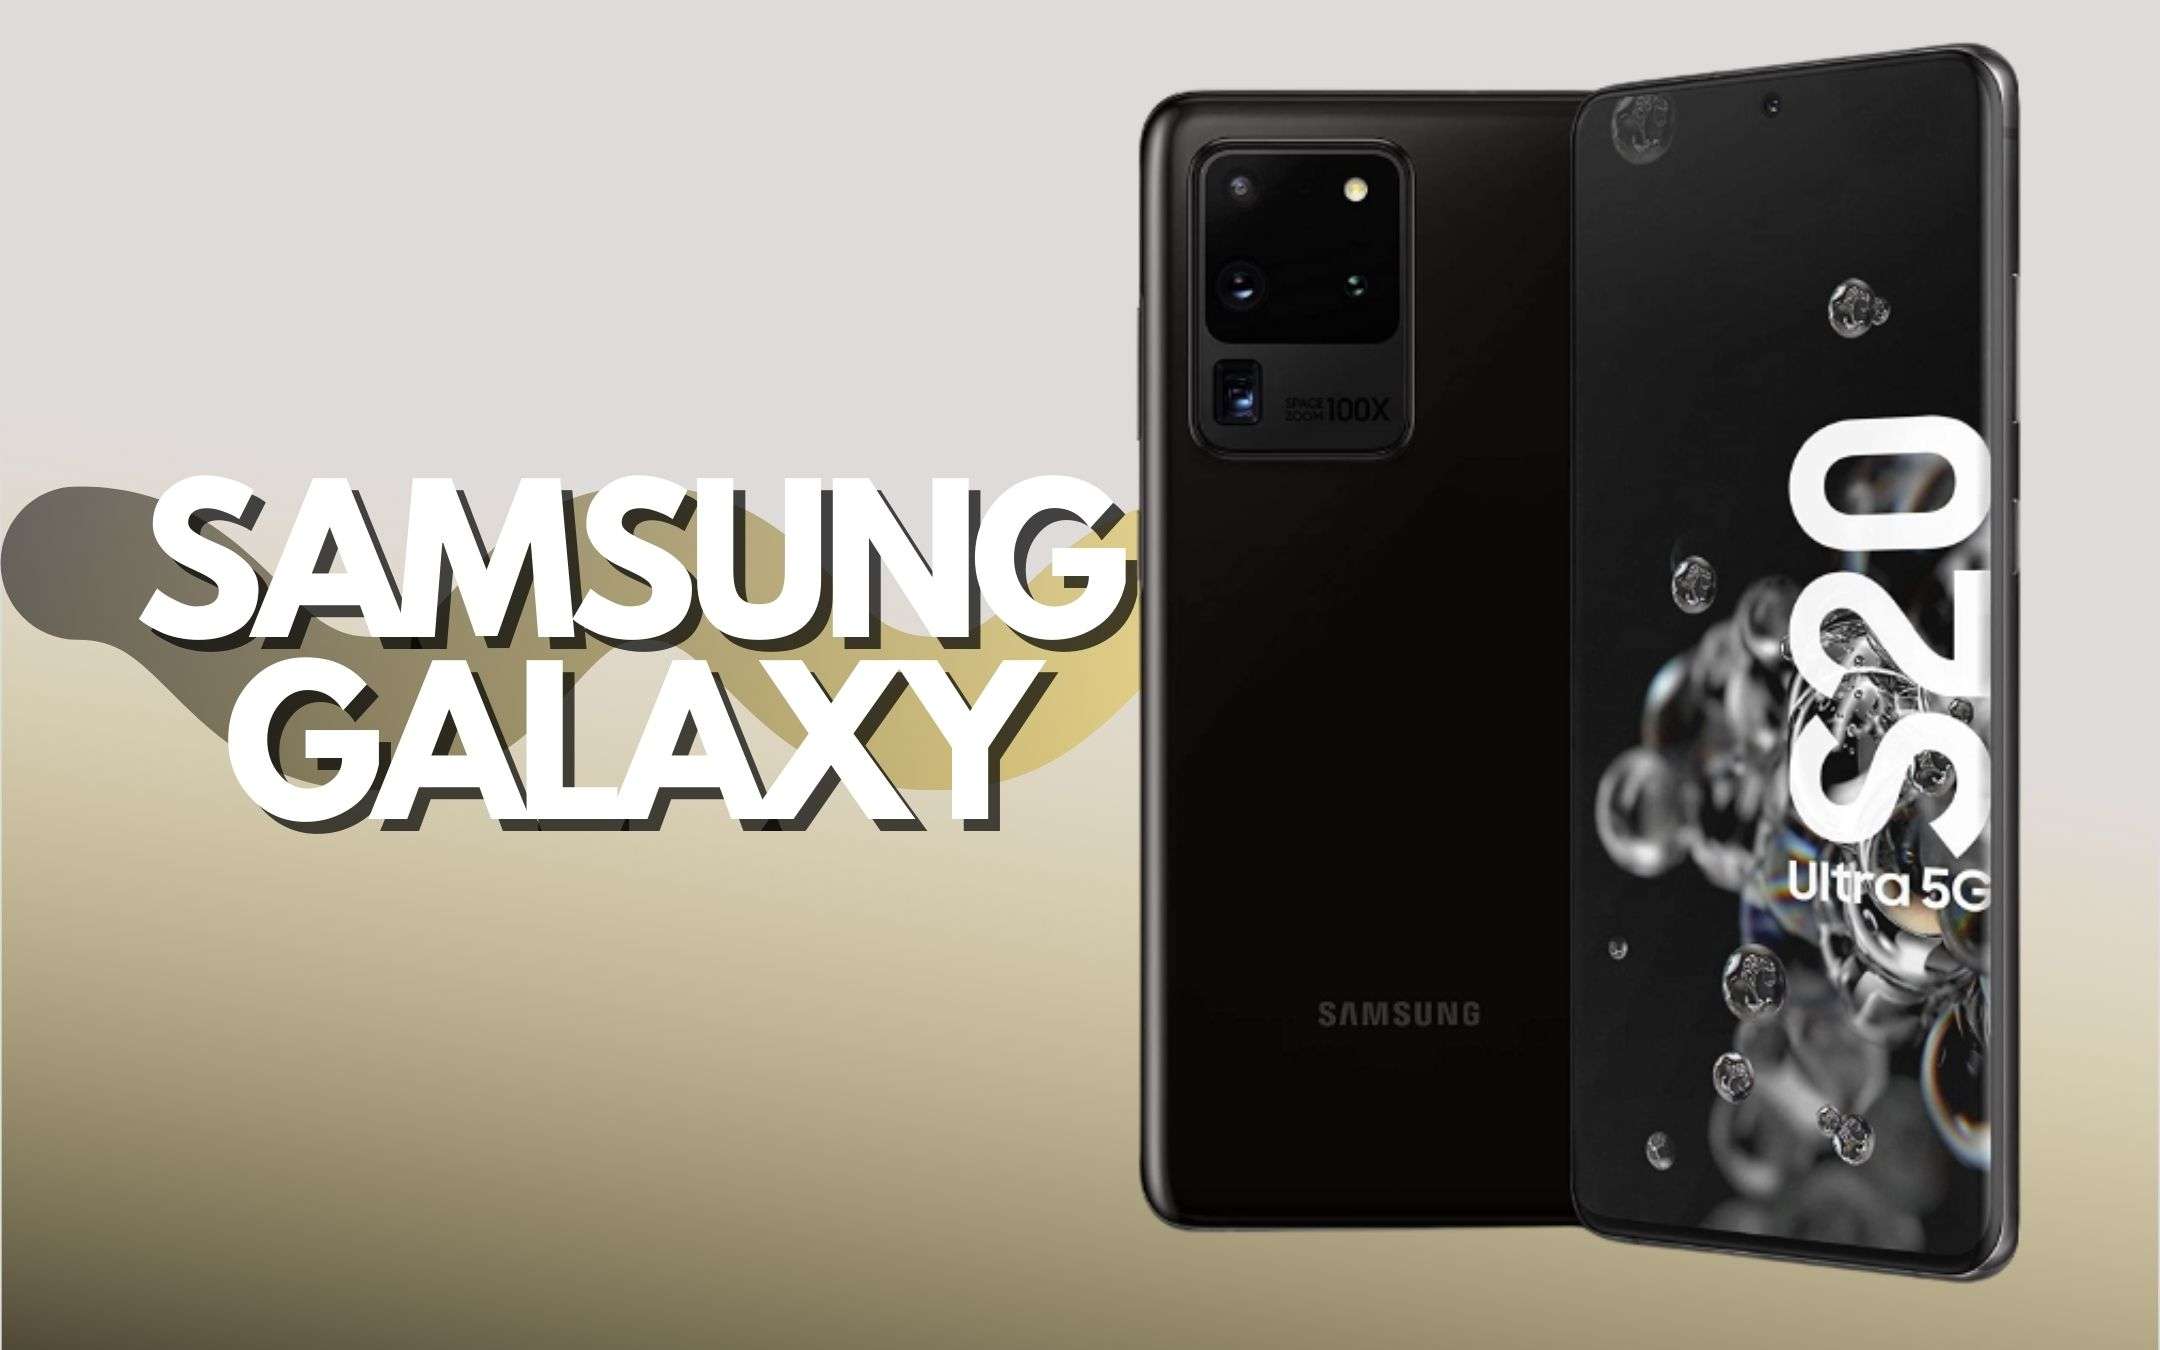 Samsung Galaxy S20 Ultra a prezzo BOMBA (-599€)